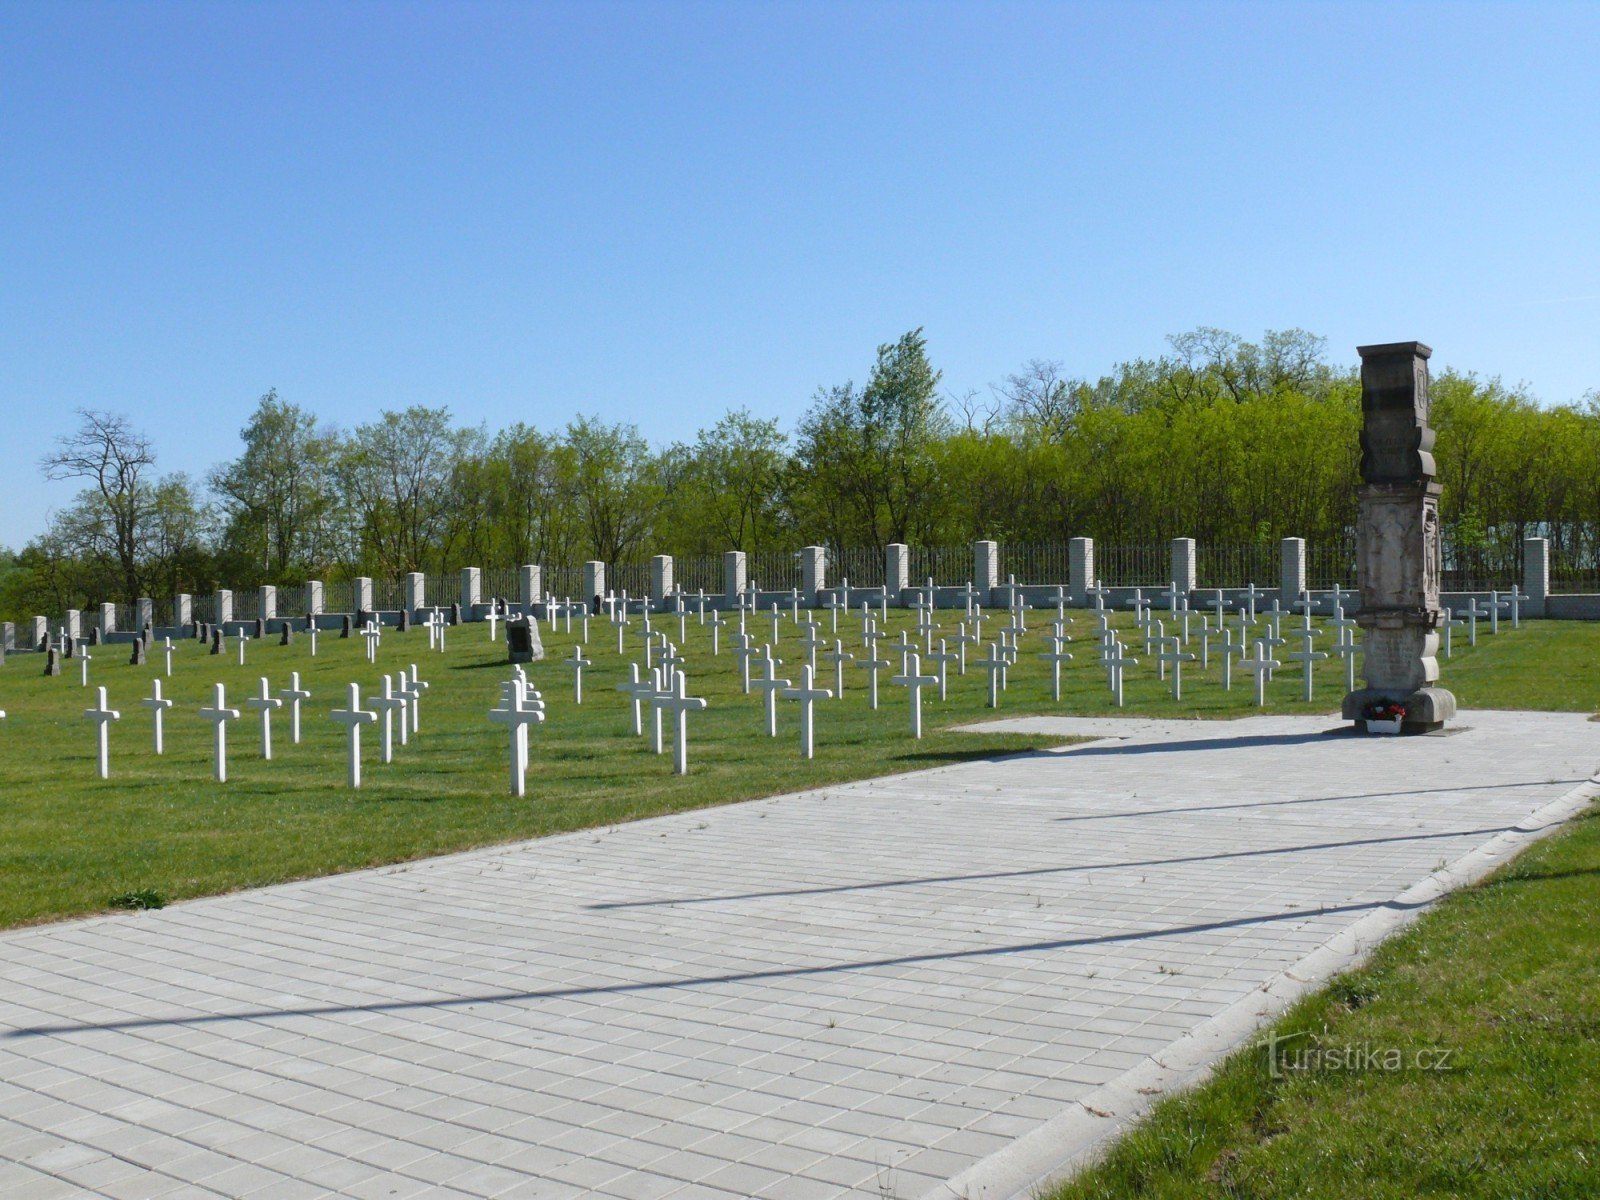 Milovice - Międzynarodowy Cmentarz Wojskowy